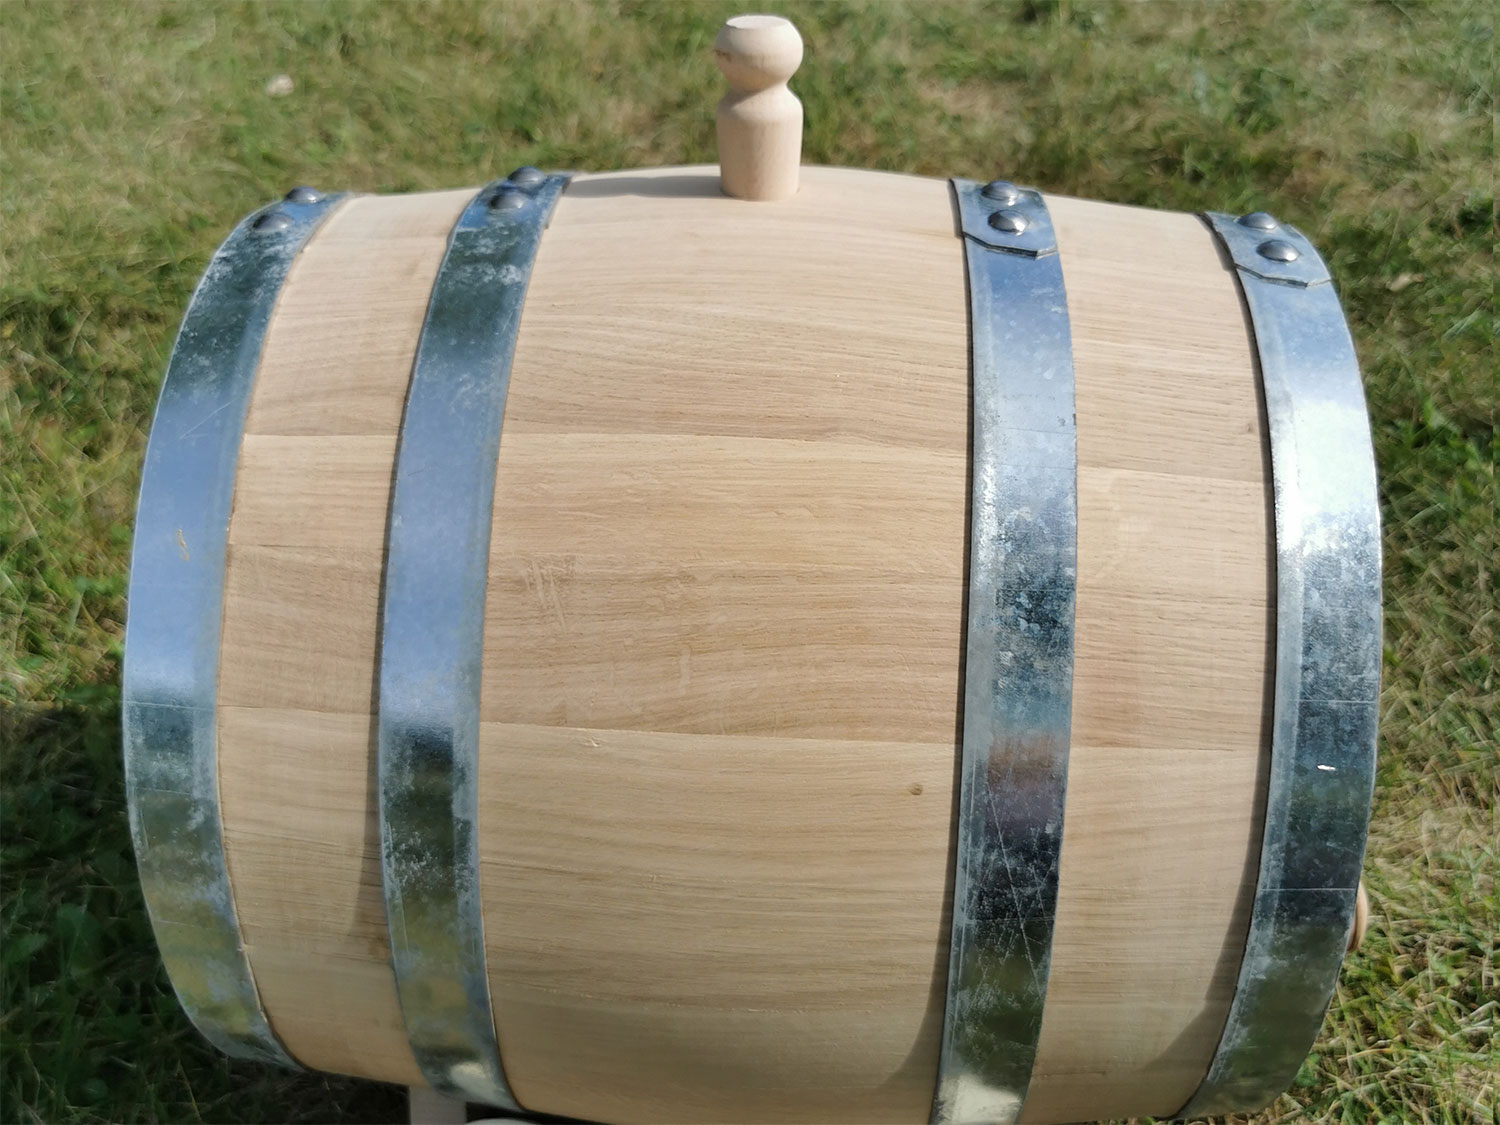 Фото 1 - Special Edition Oak barrel 20L.